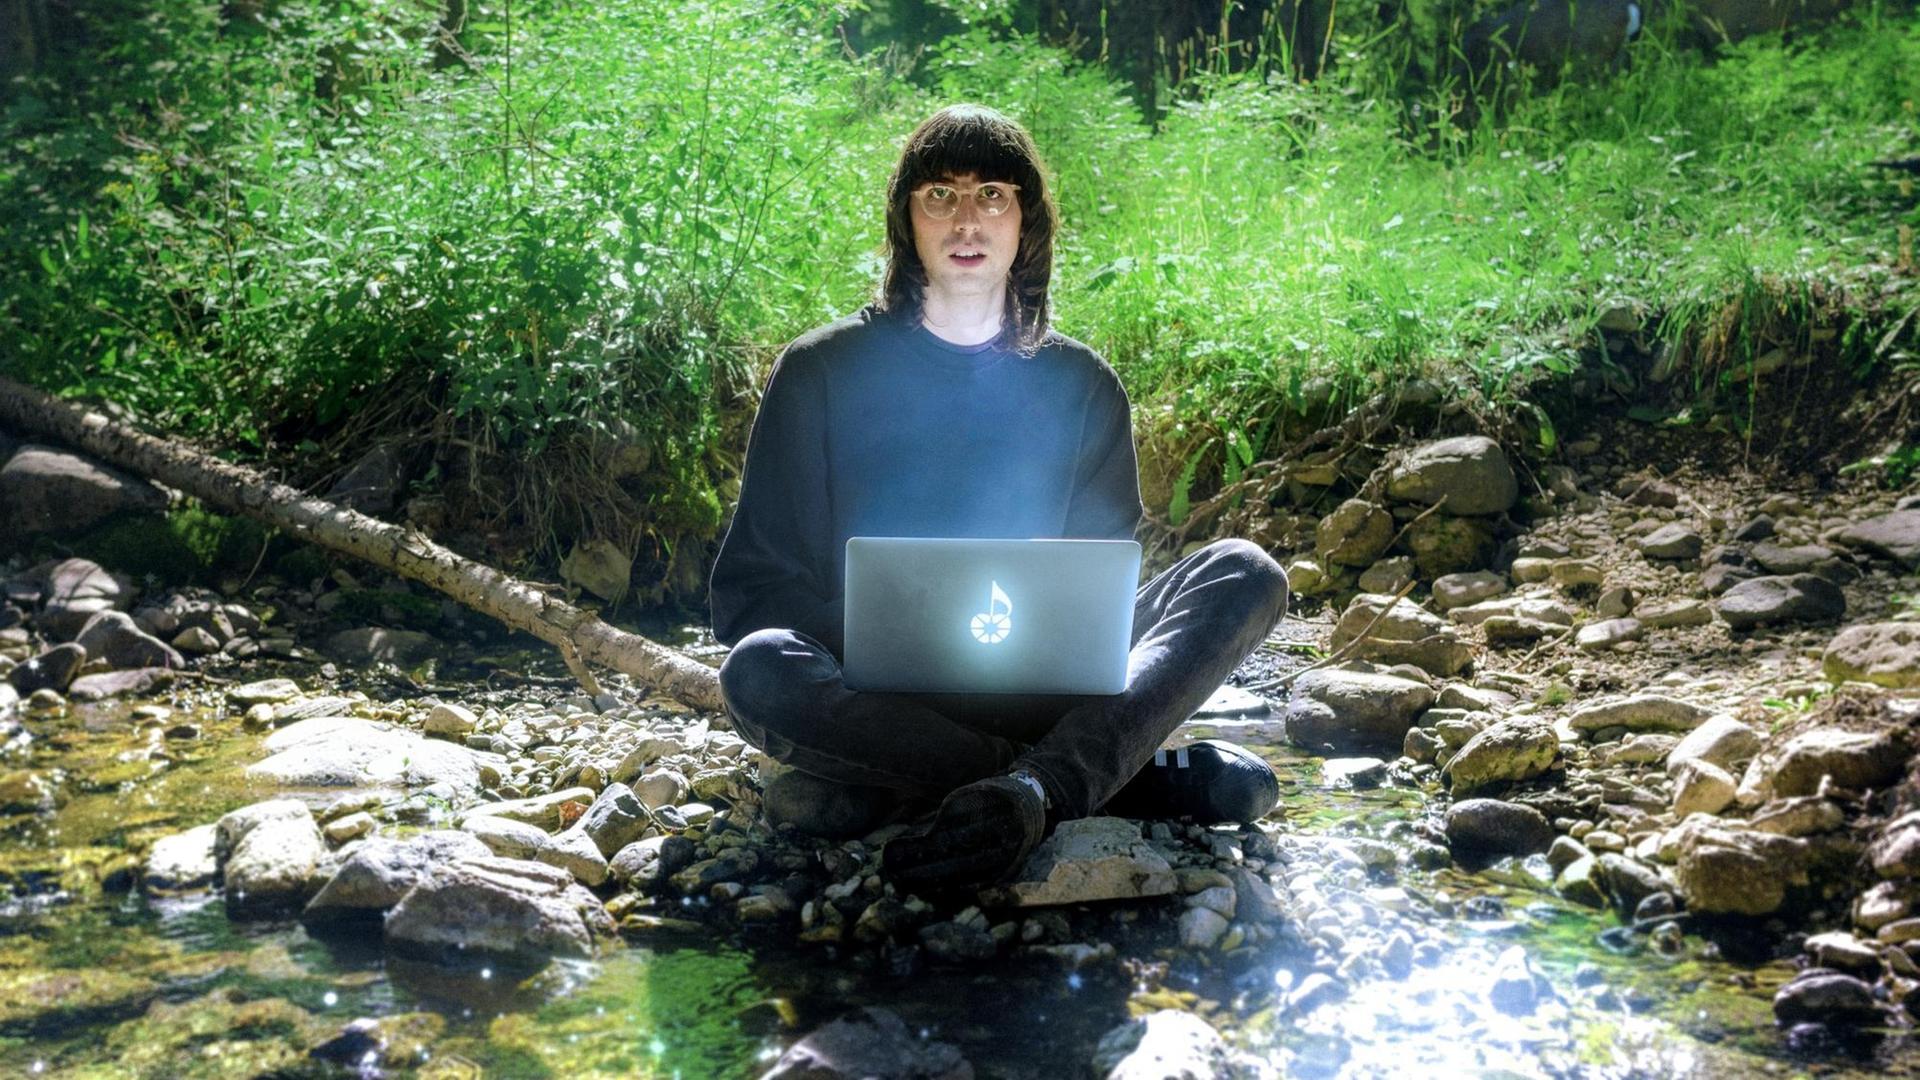 A.G. Cook sitzt mit einem geheimnisvoll leuchtenden Laptop auf dem Schoß im Schneidersitz in einem Waldflussidyll und blickt erstaunt in die Kamera.